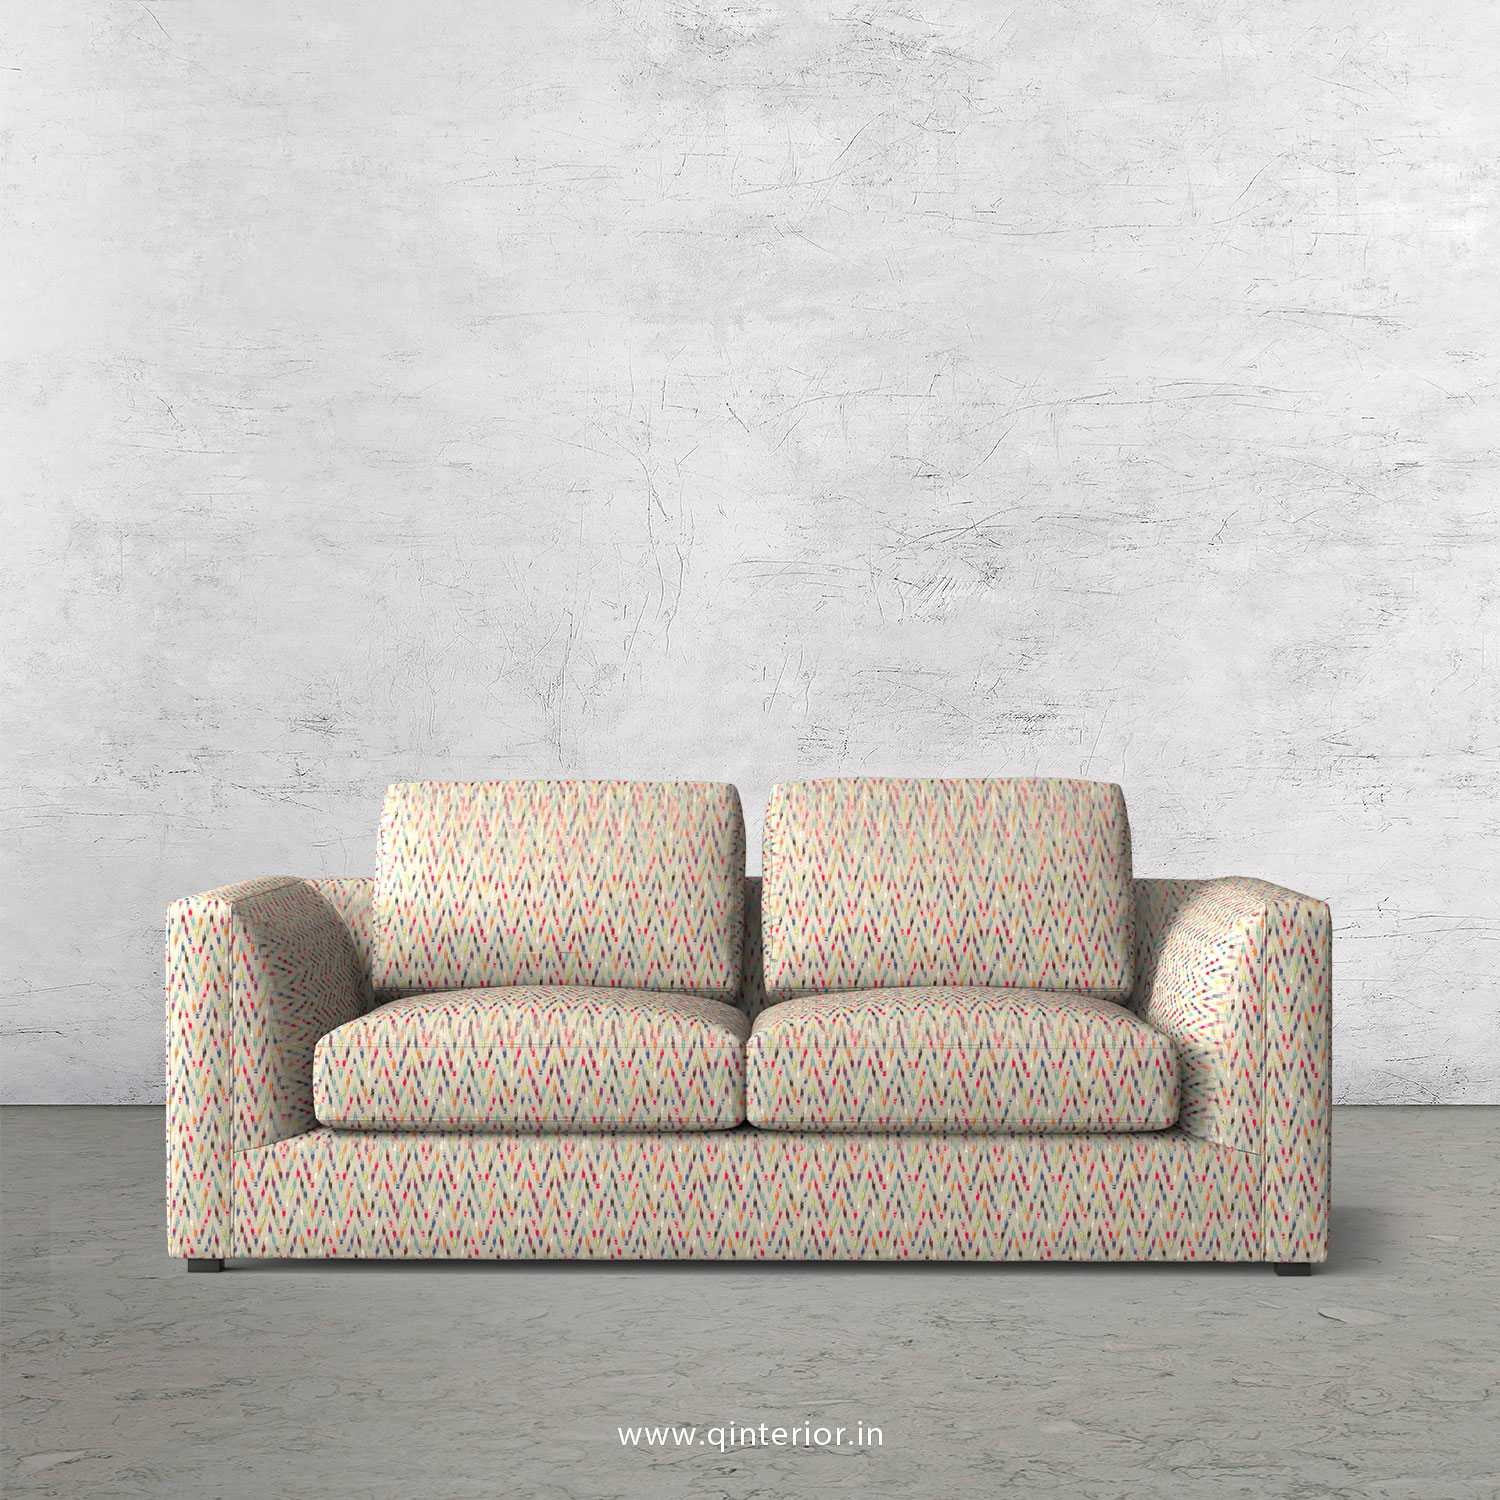 IRVINE 2 Seater Sofa in Bargello Fabric - SFA003 BG10